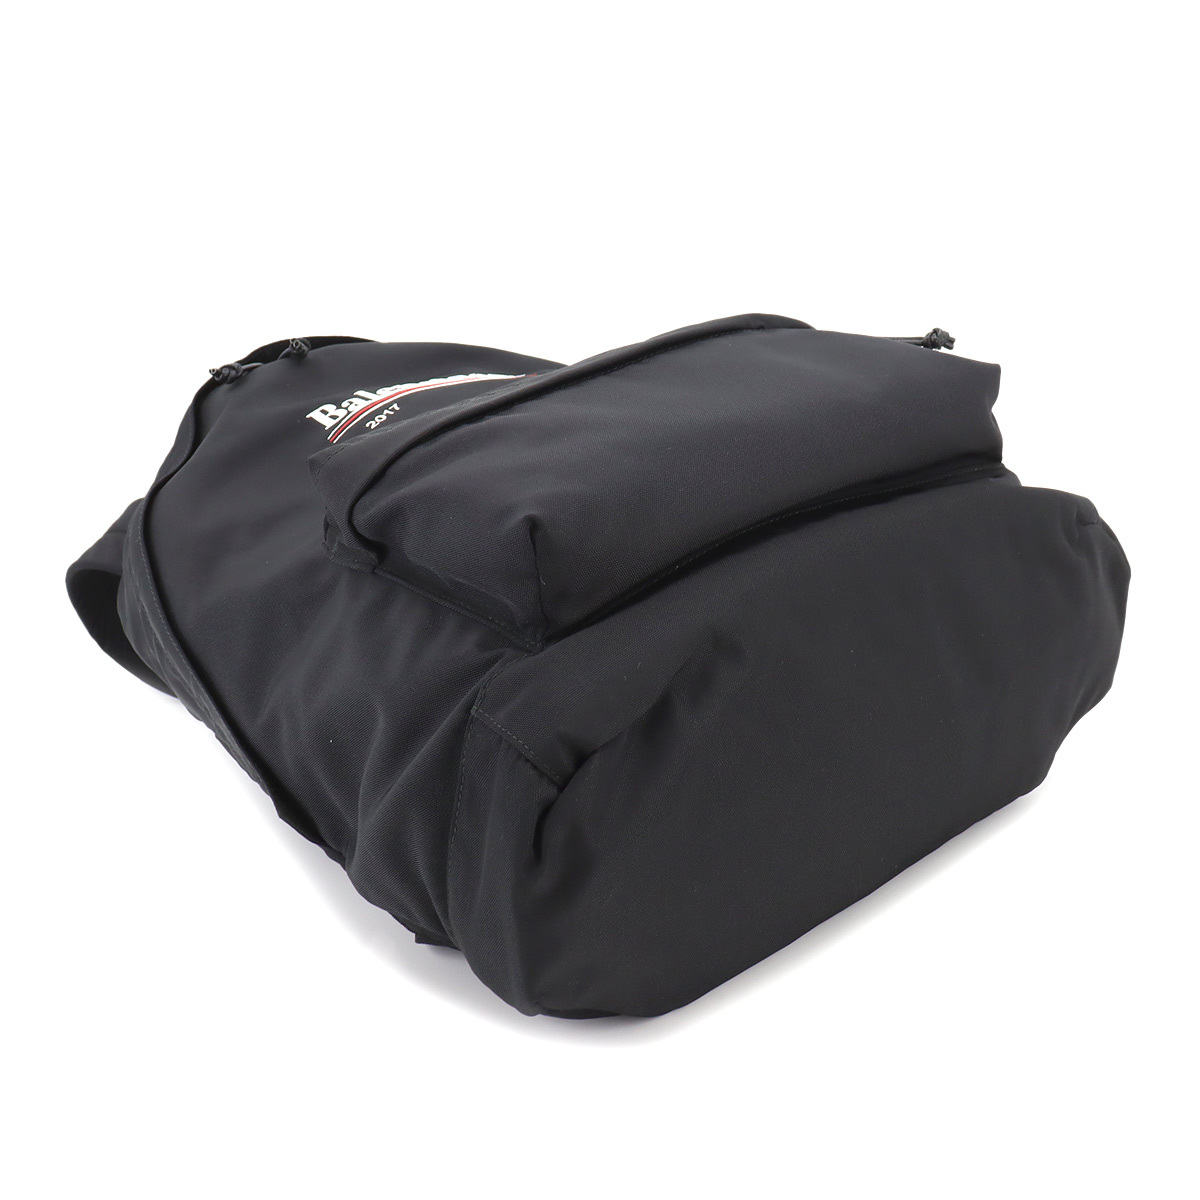  не использовался выставленный товар Balenciaga BALENCIAGA Explorer рюкзак рюкзак нейлон черный 459744 Backpack 90213195